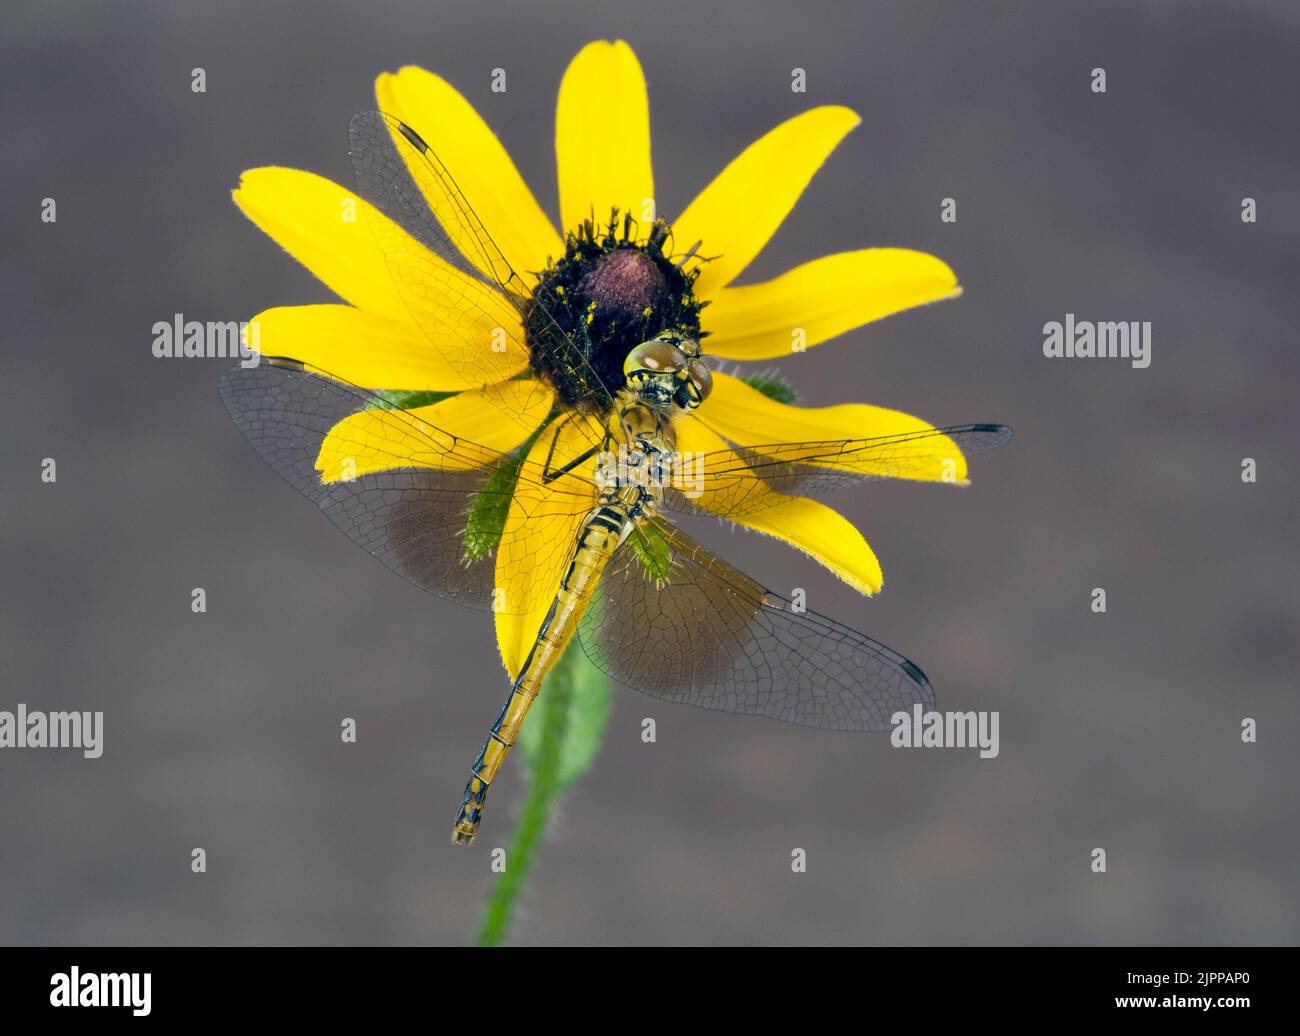 Particolare di un meadowhawk alato da una band, Sympetrum semi-intum, una farfalla comune sparsa in tutti gli Stati Uniti. Foto Stock